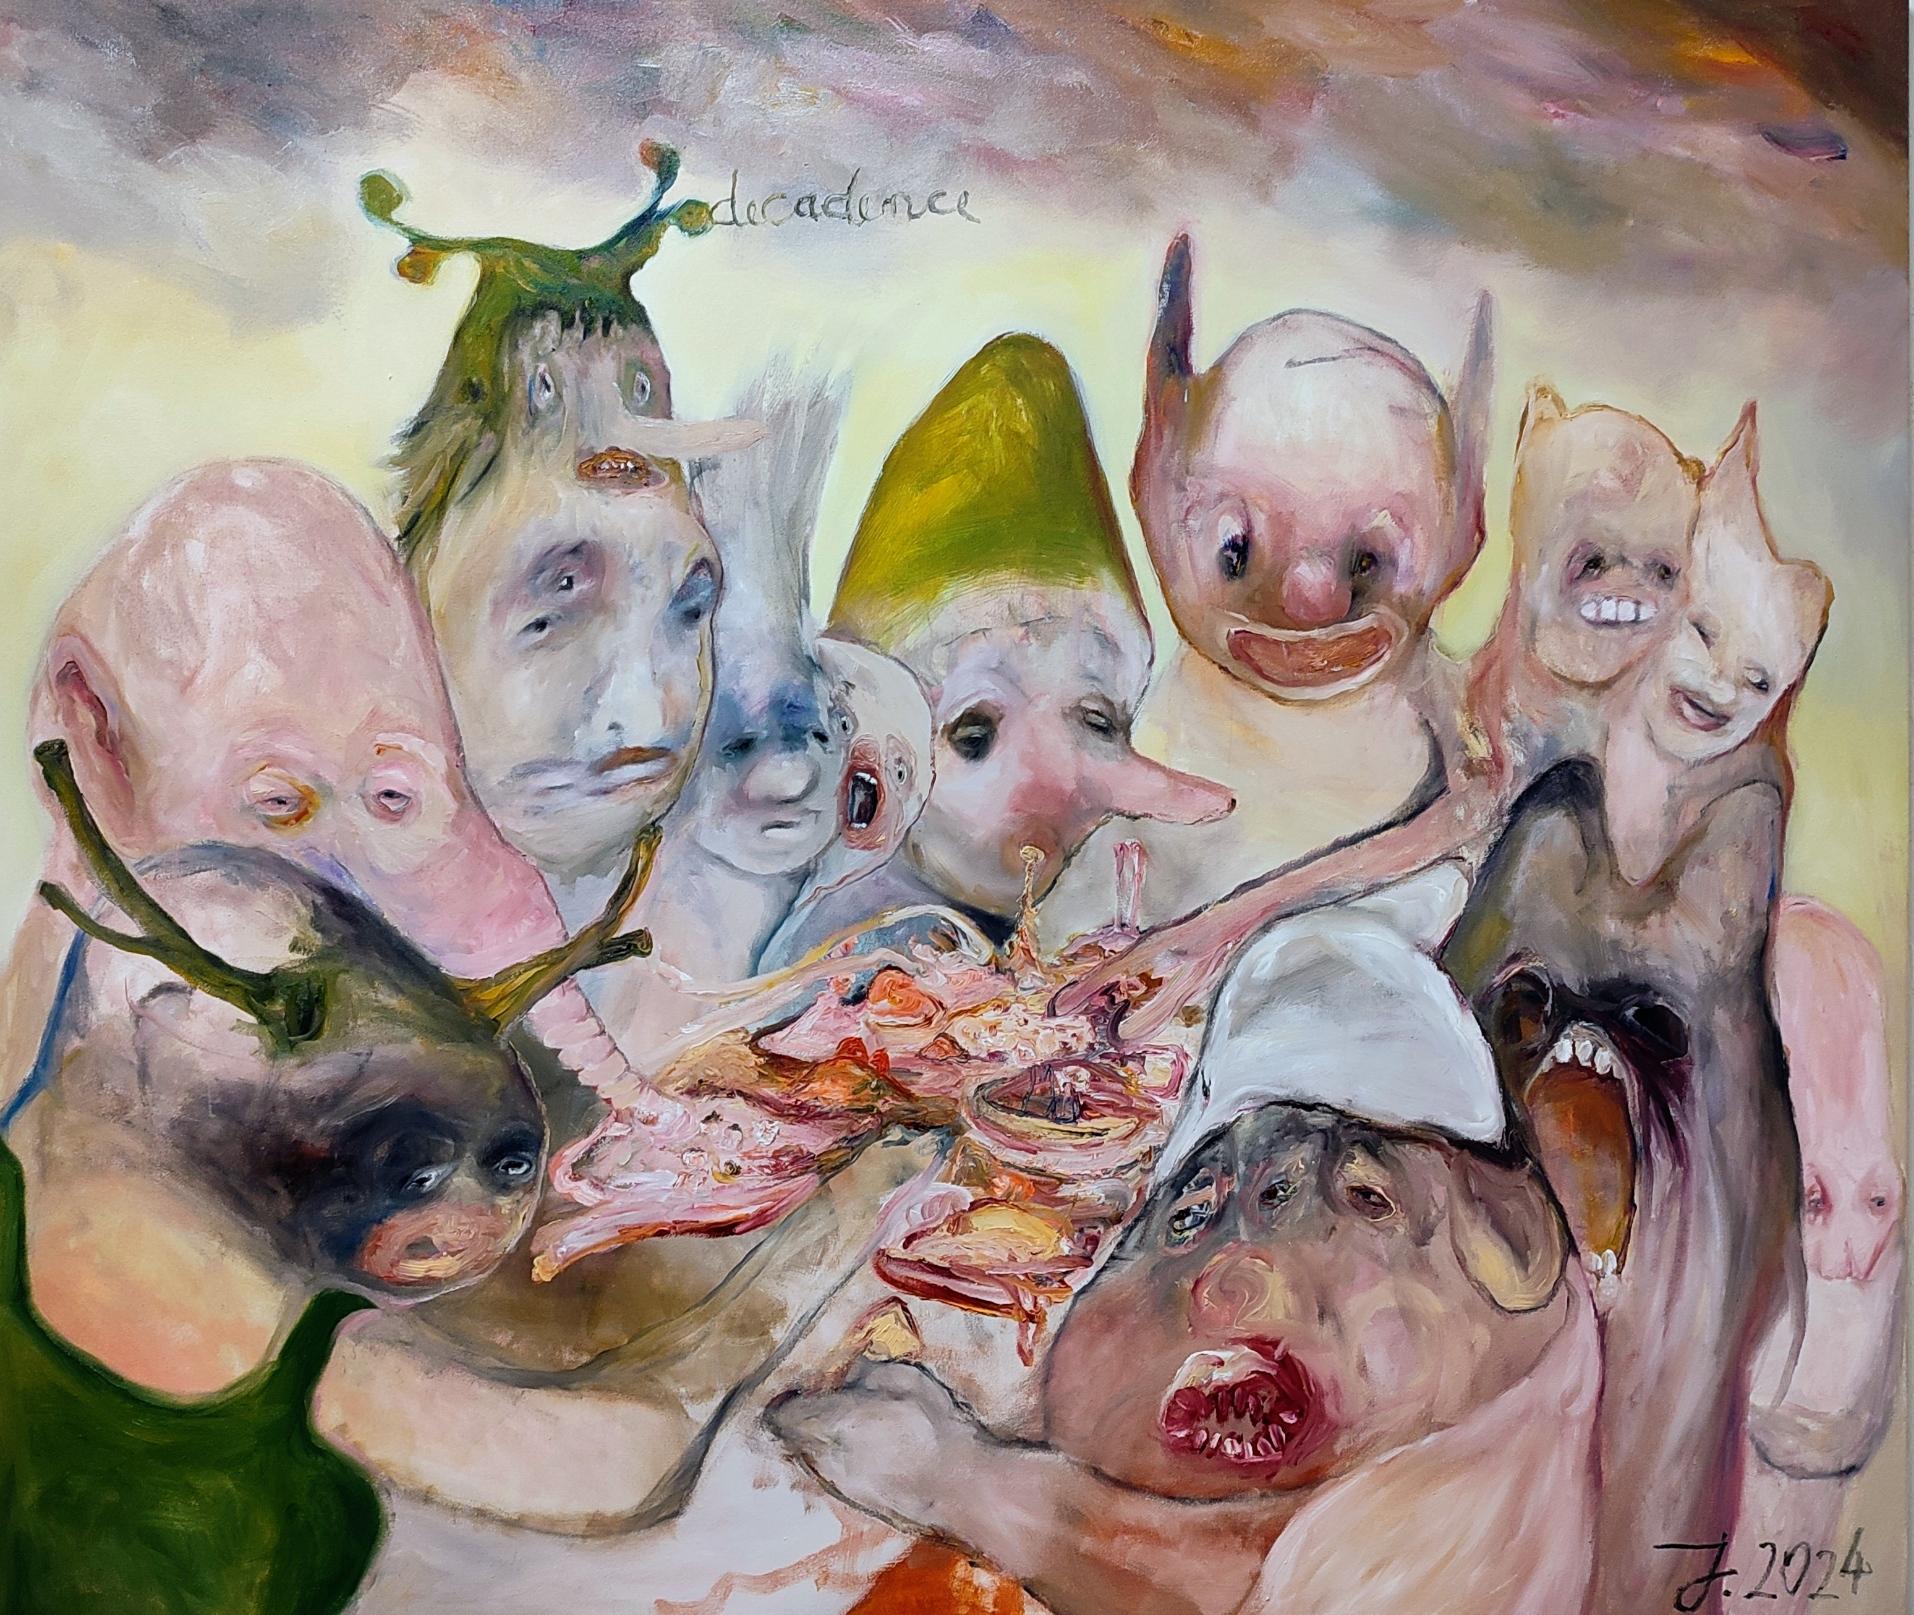 Öl auf Leinwand

Juliane Hundertmark ist eine deutsche Künstlerin, die 1971 geboren wurde und in Berlin, Deutschland, lebt und arbeitet. Sie gilt als eine der originellsten und einfallsreichsten aufstrebenden Malerinnen Berlins. Juliane Hundertmark